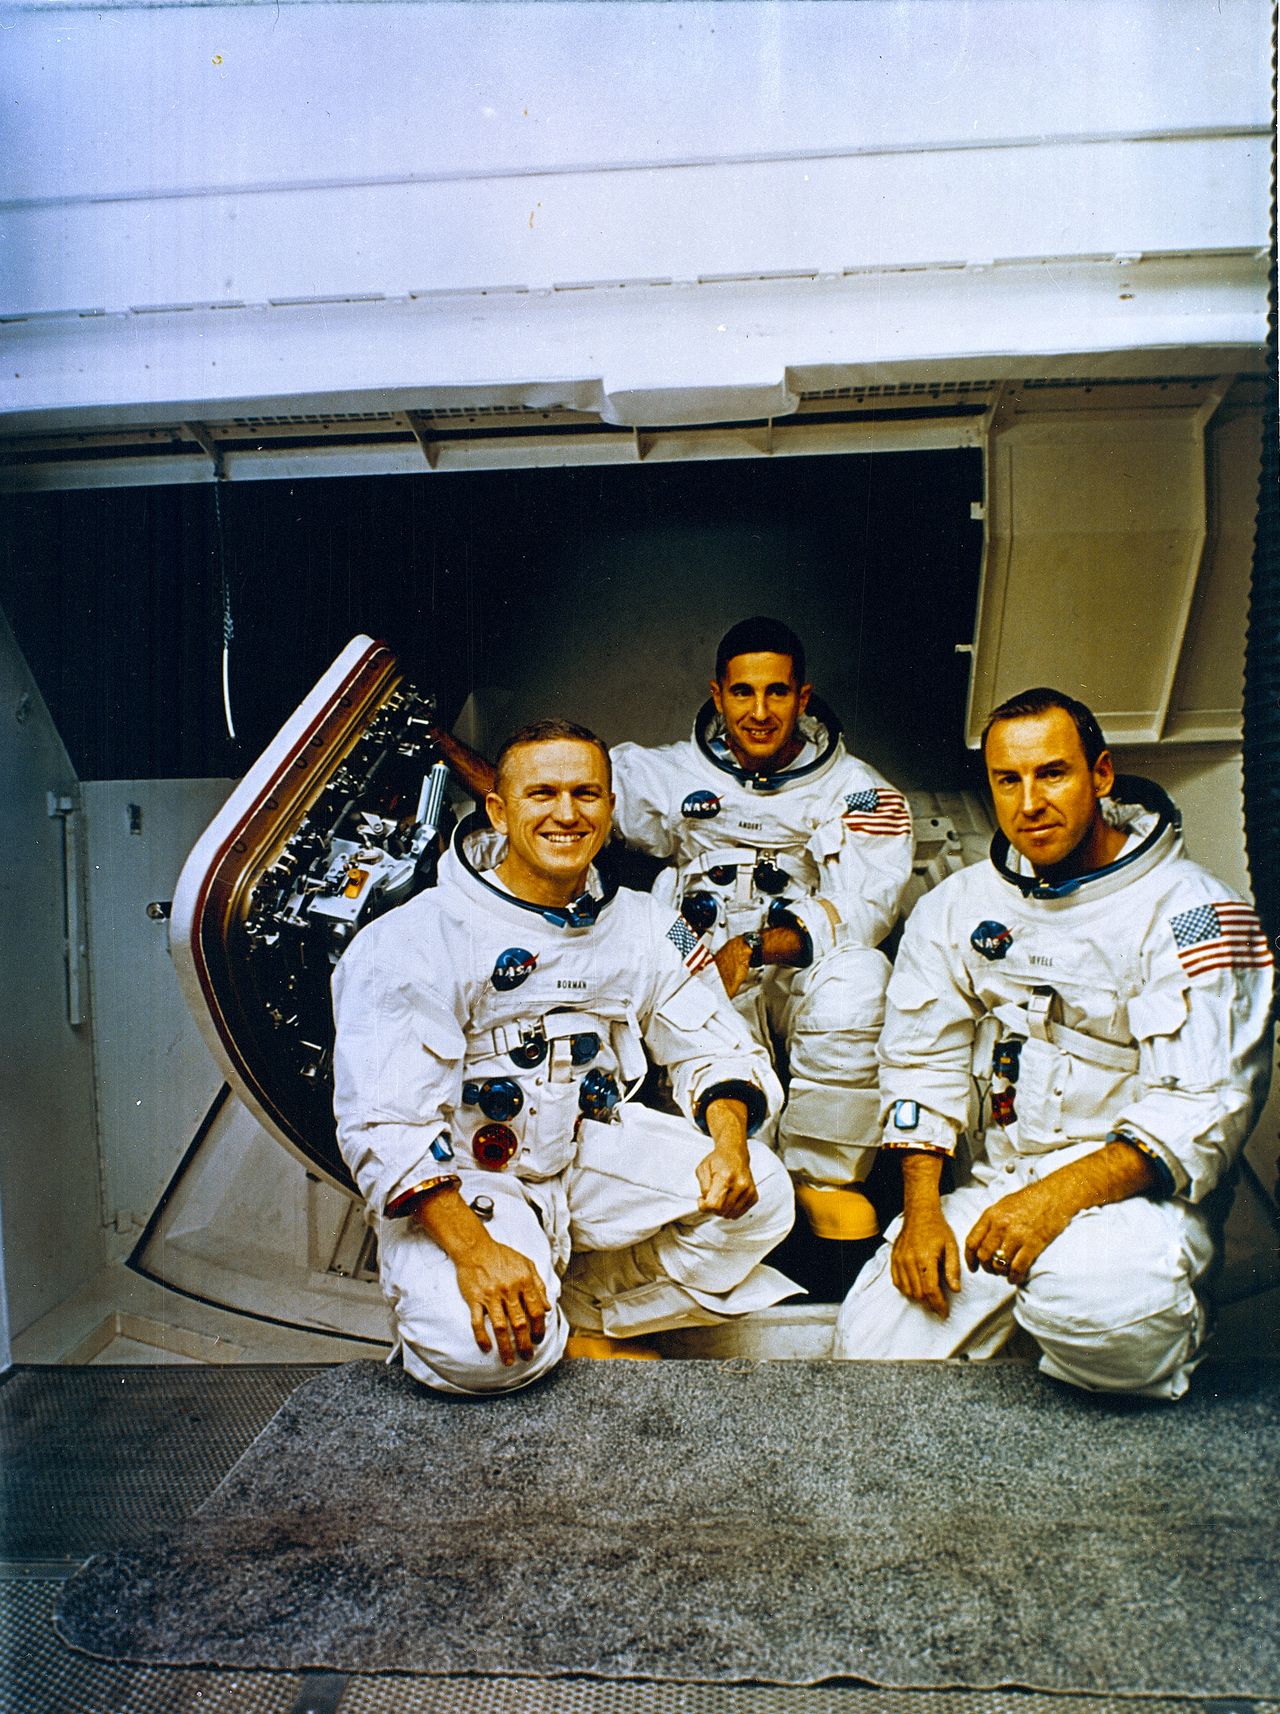 Misja Apollo 8 była ważniejsza, niż się wydaje. 50 lat temu pierwszy raz człowiek okrążył Księżyc